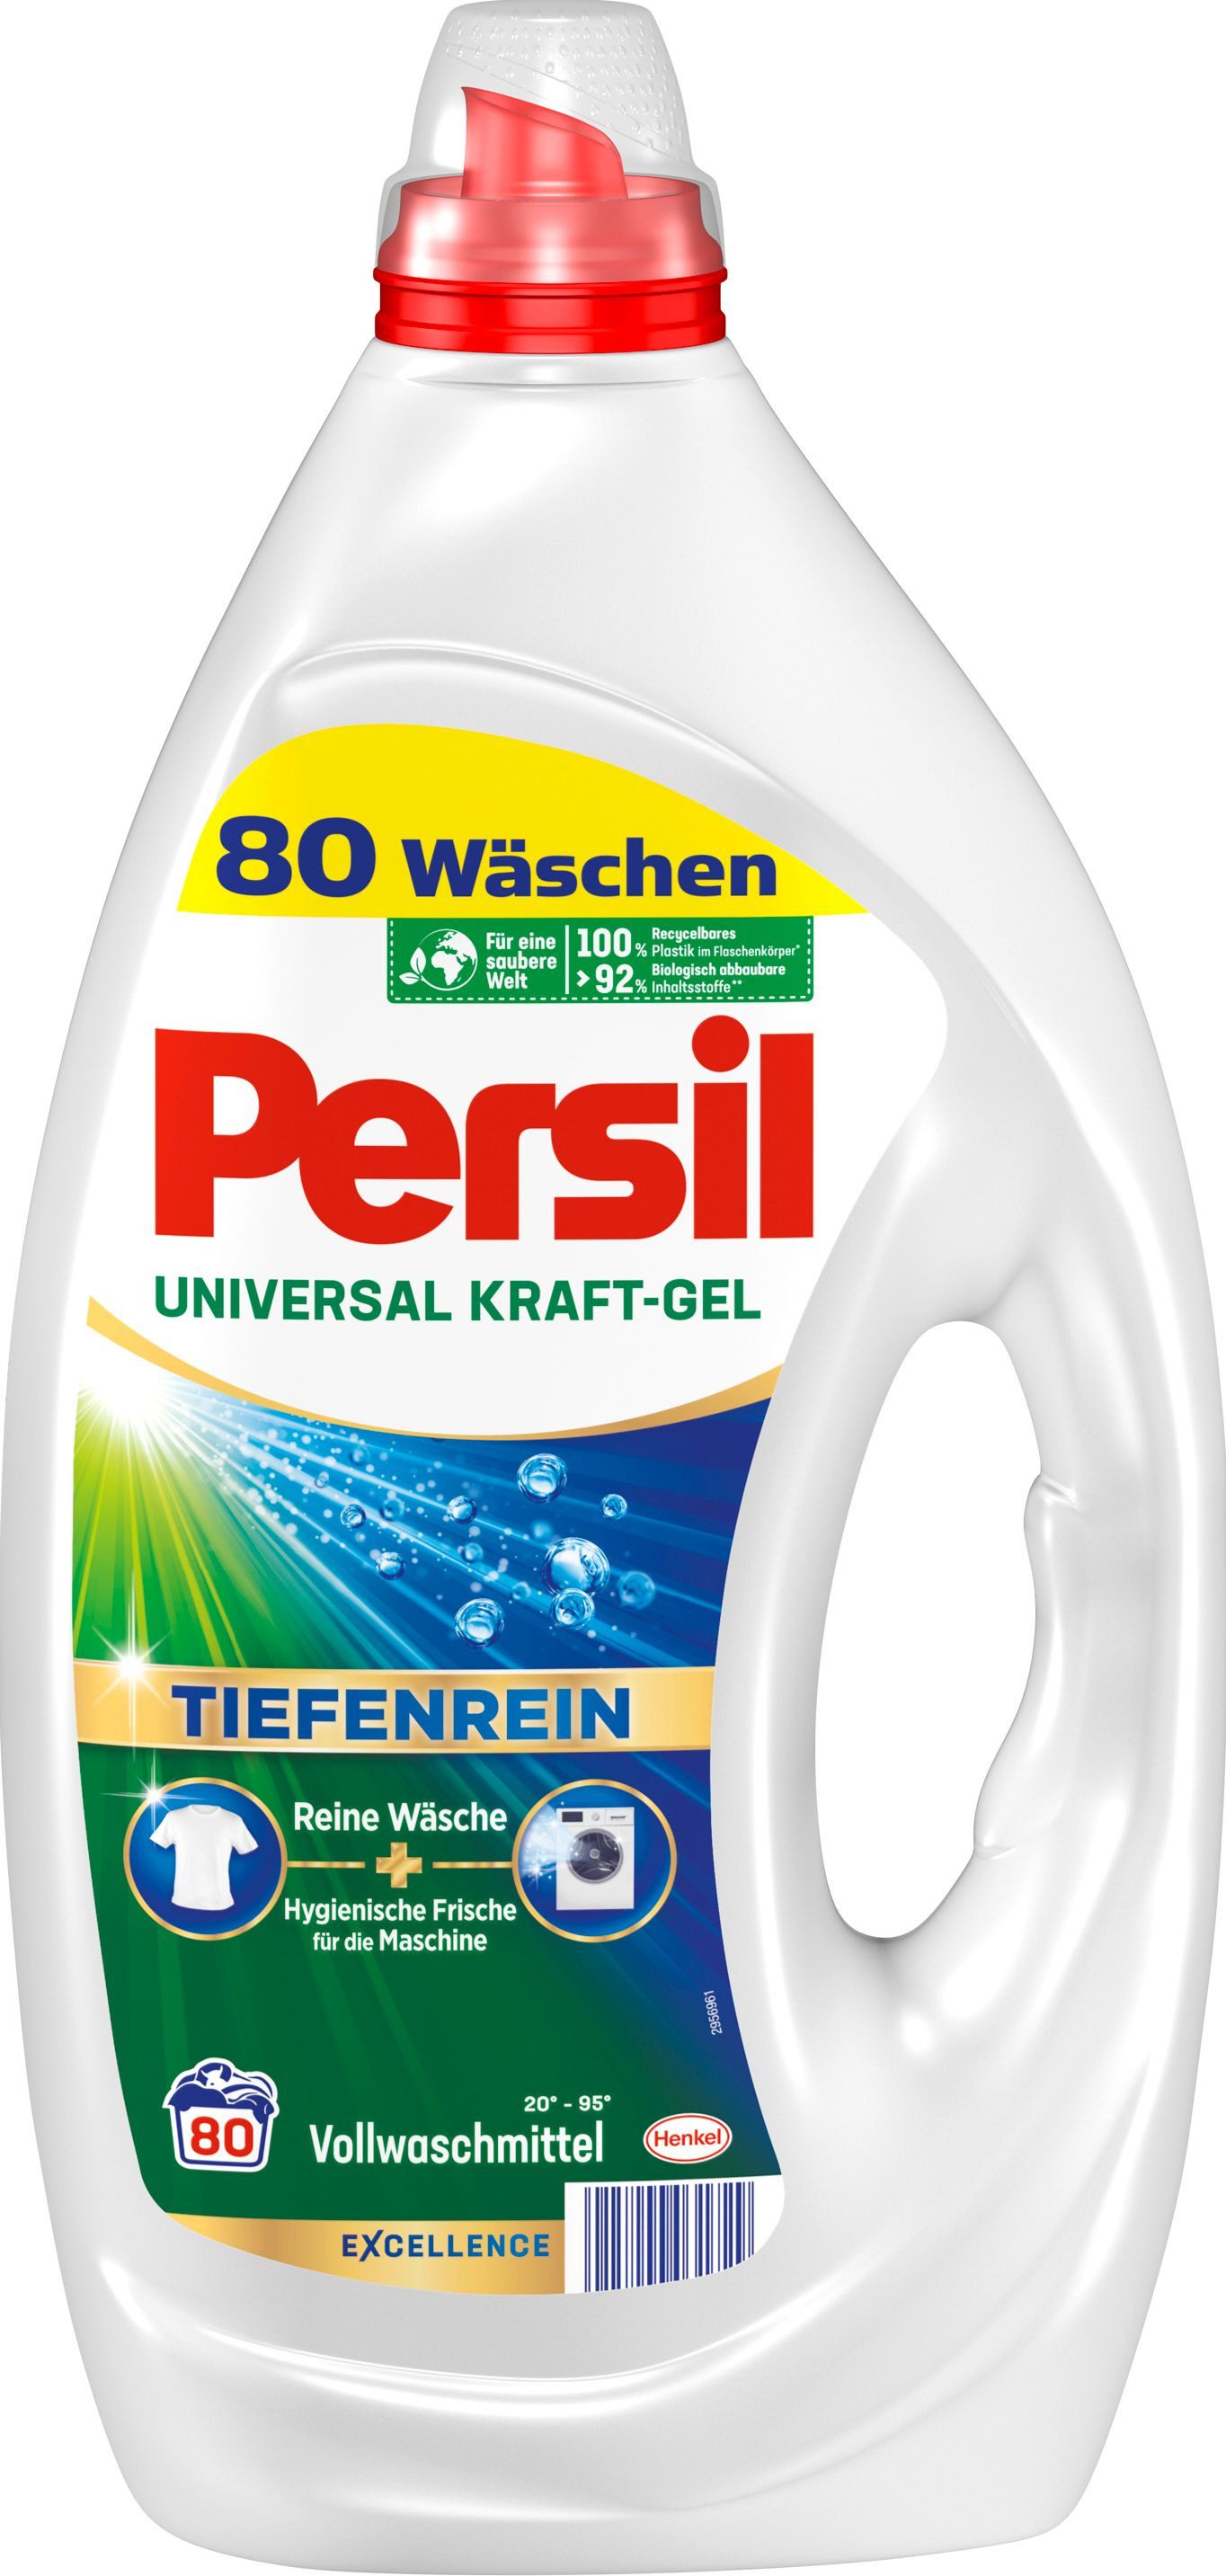 Persil Kraft-Gel Universal 80 WL Vollwaschmittel (1-St. 3,6 l Flüssigwaschmittel mit Tiefenrein Technologie)